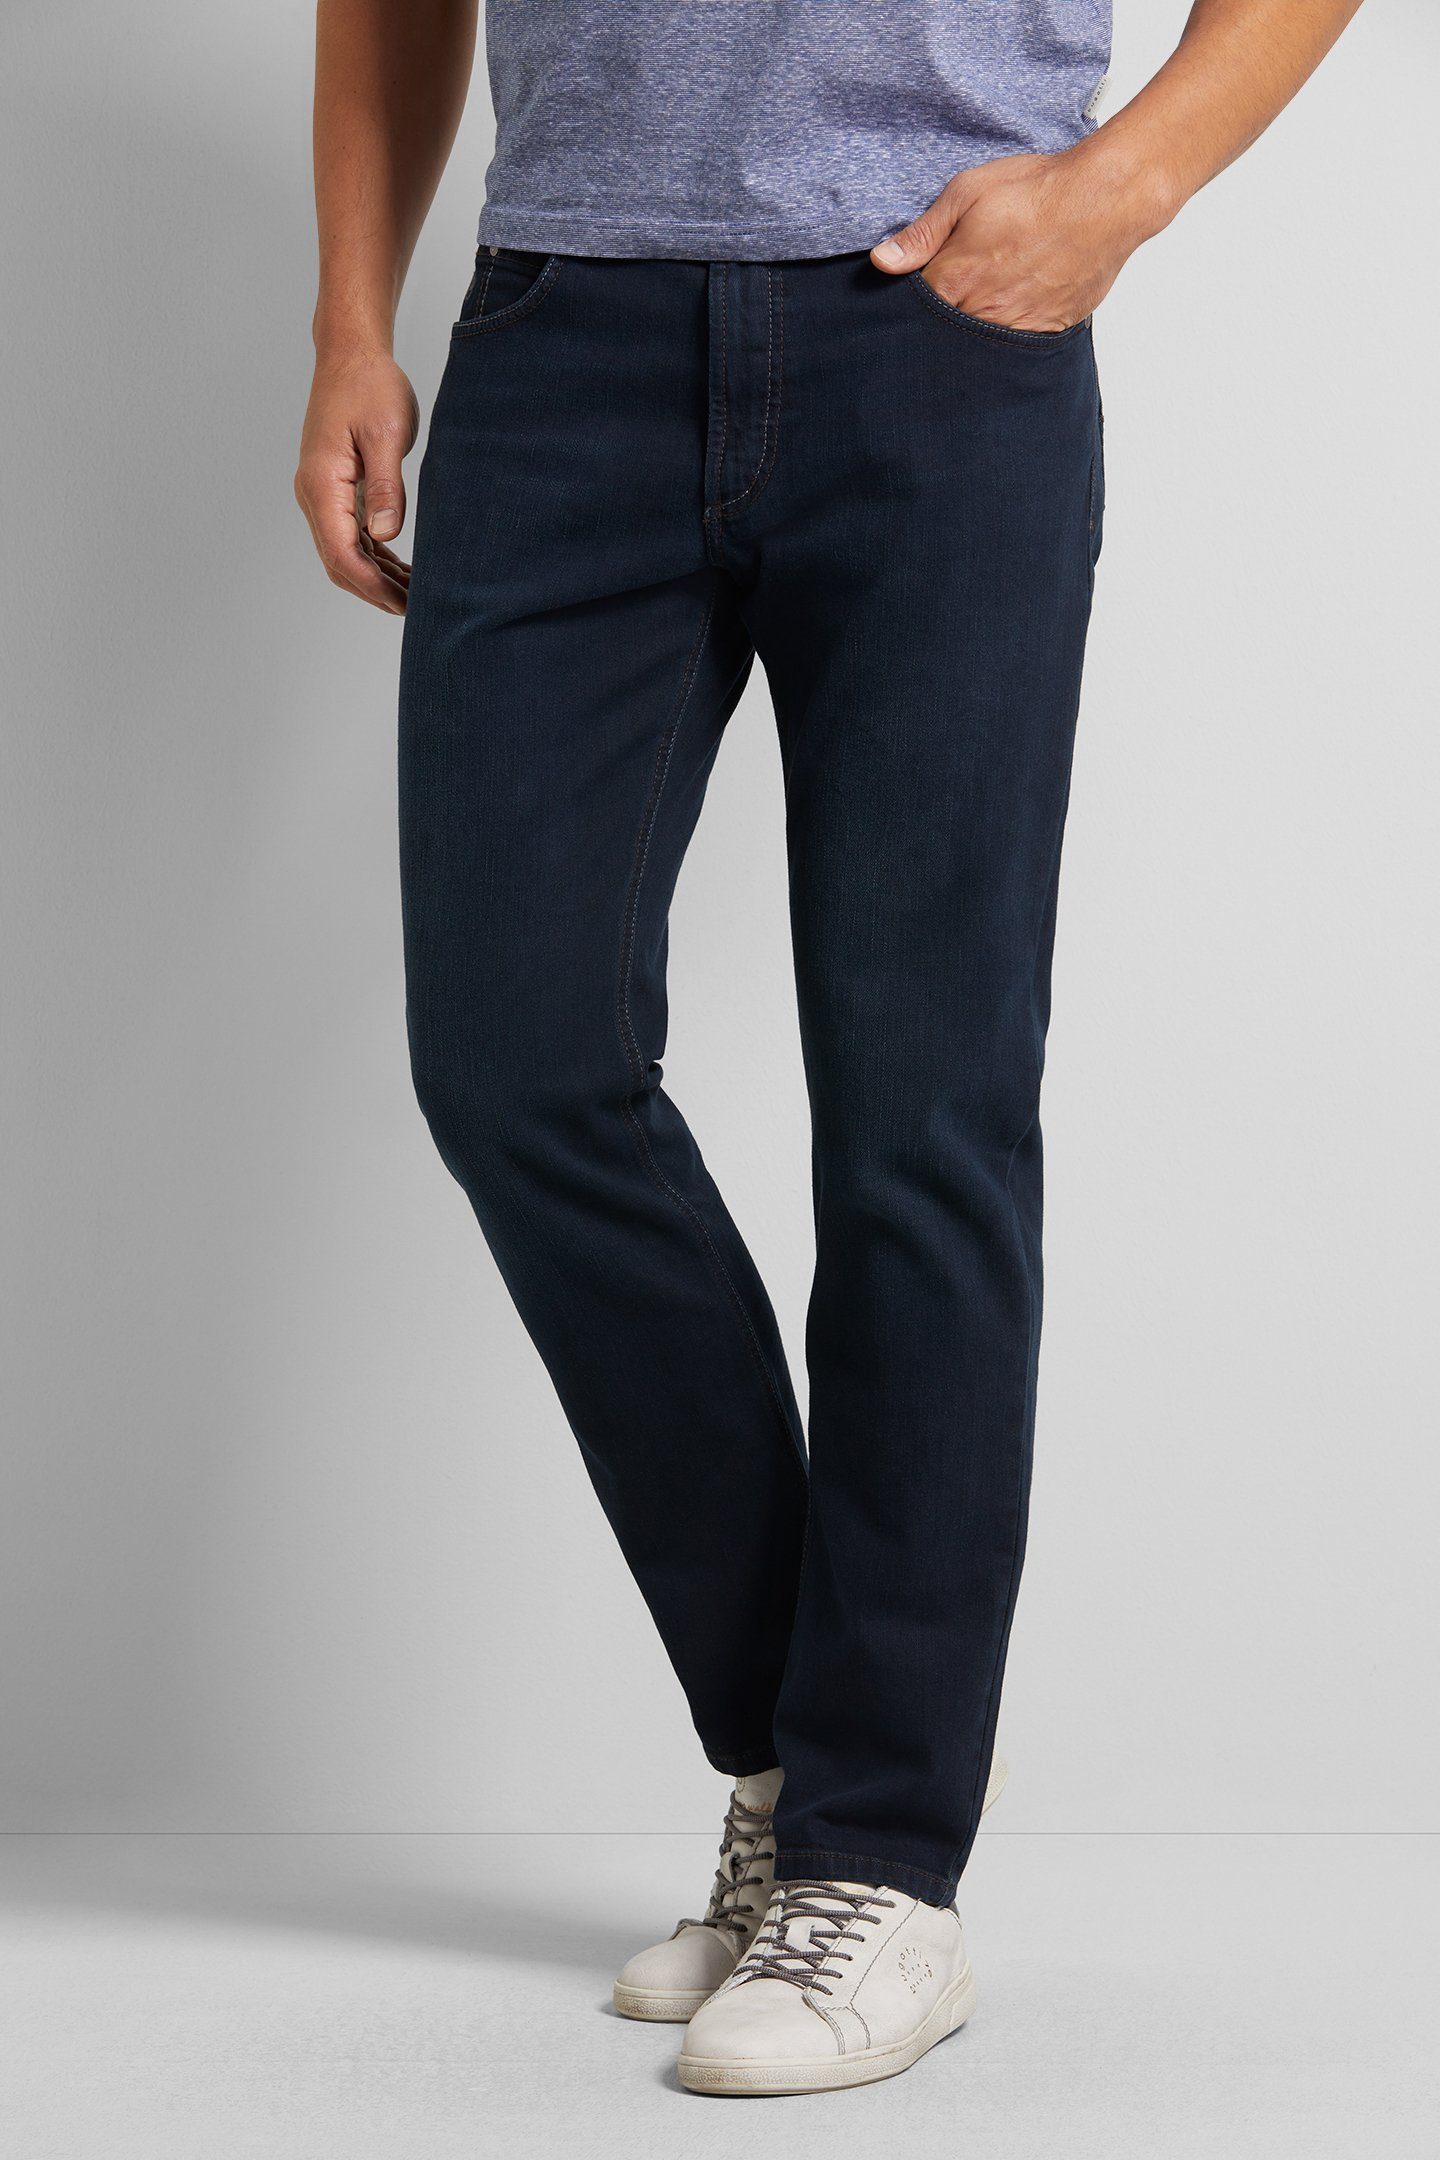 blau-schwarz bugatti mit Comfort 5-Pocket-Jeans Stretch